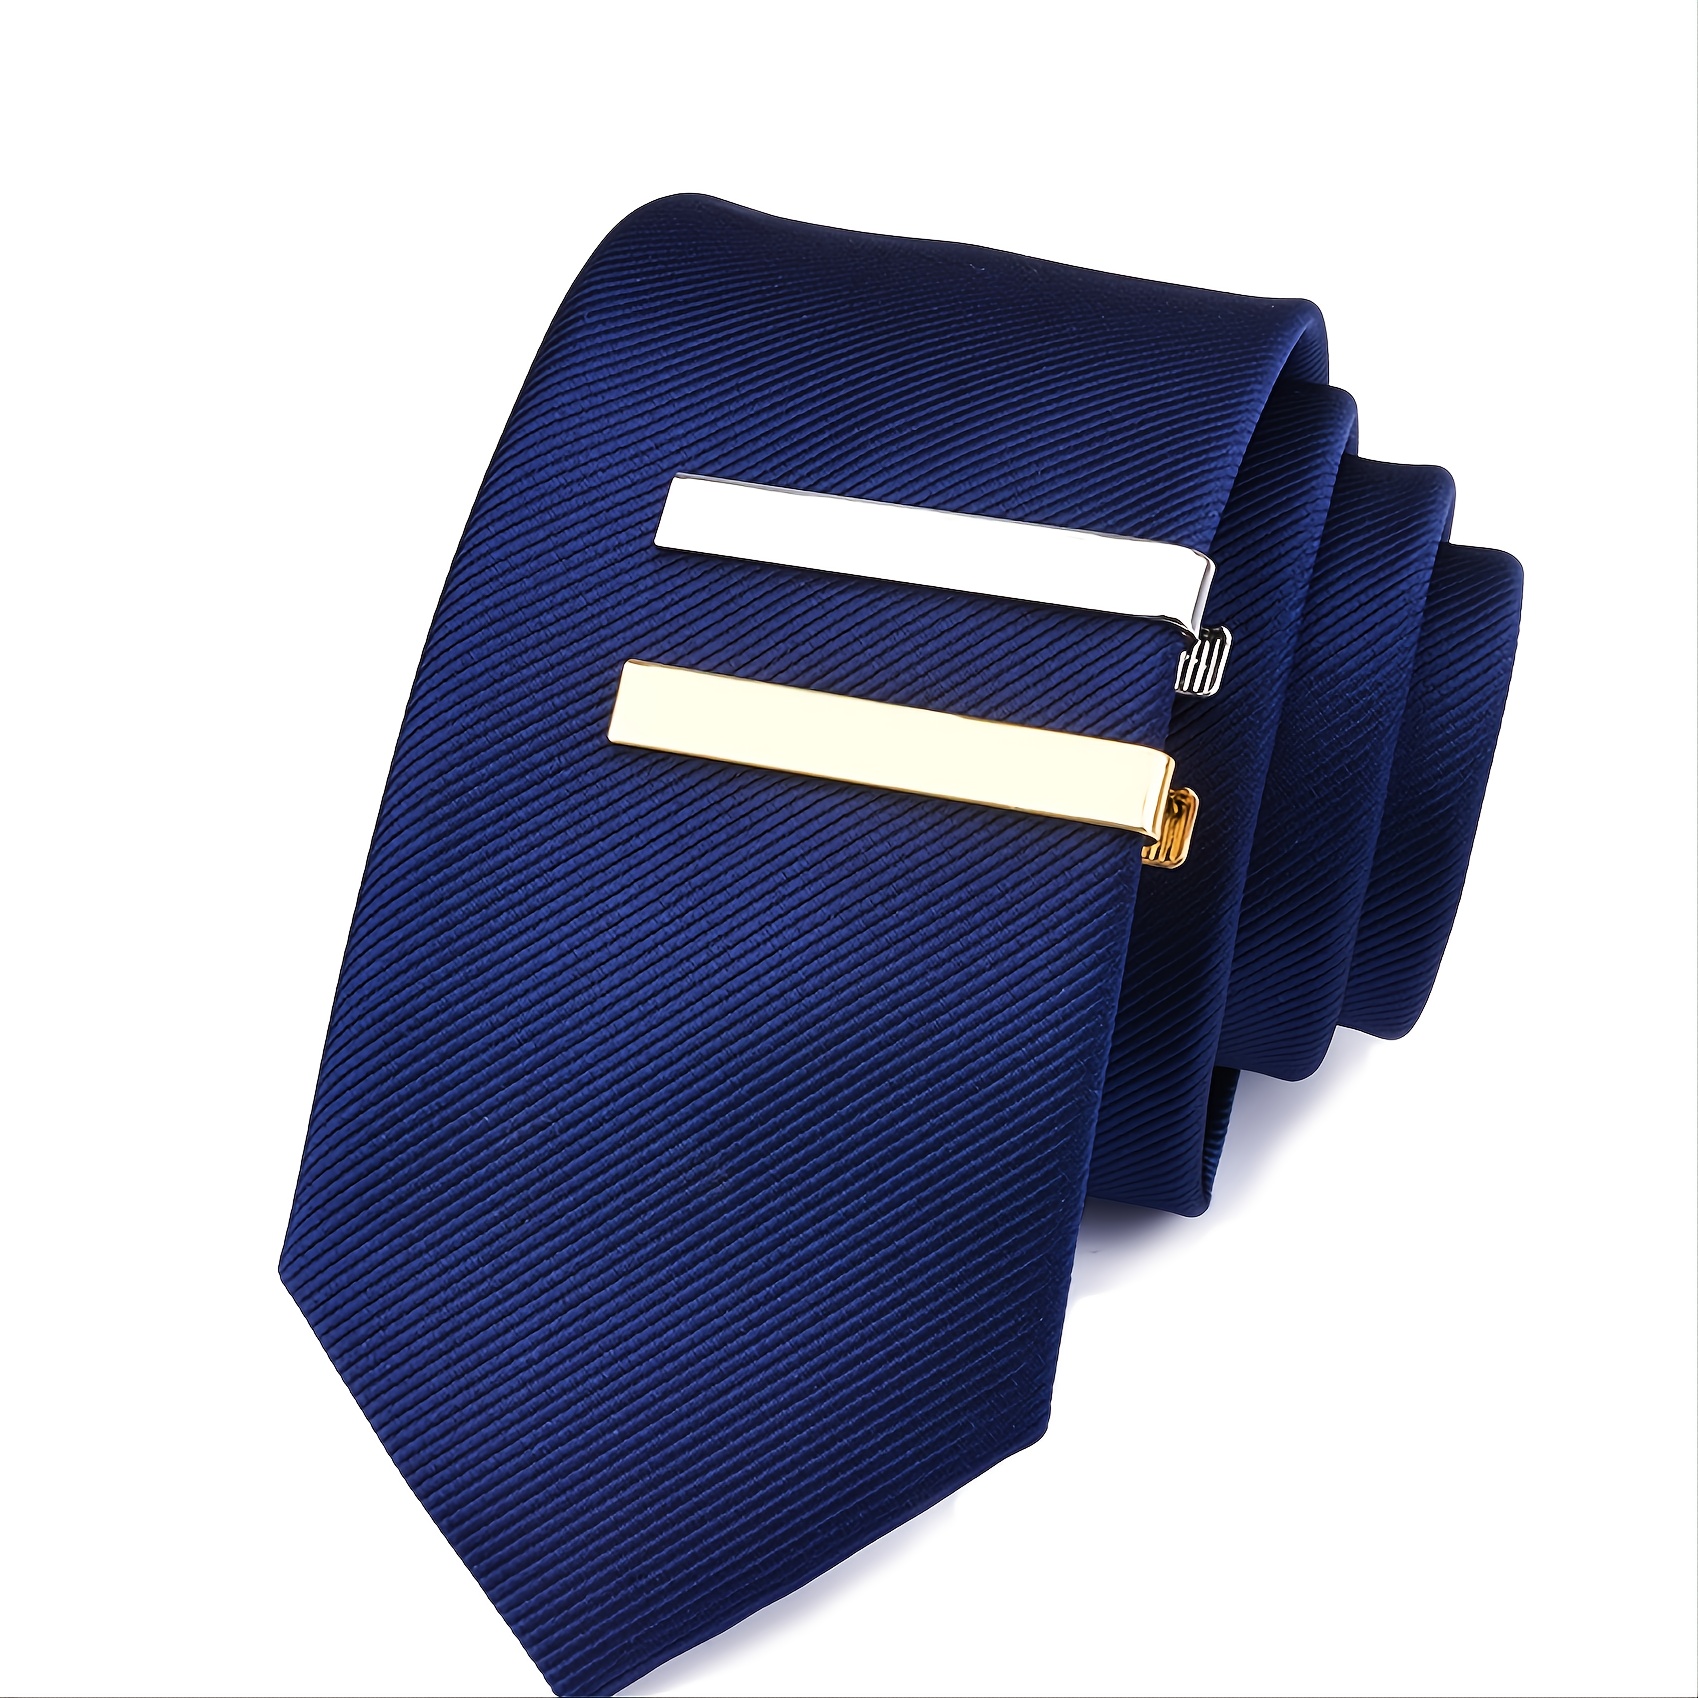 1pc Men's Business Tie Clip Tie Bar for Regular Ties Necktie Suitable for Wedding Business, Tie Pin Clips,Temu